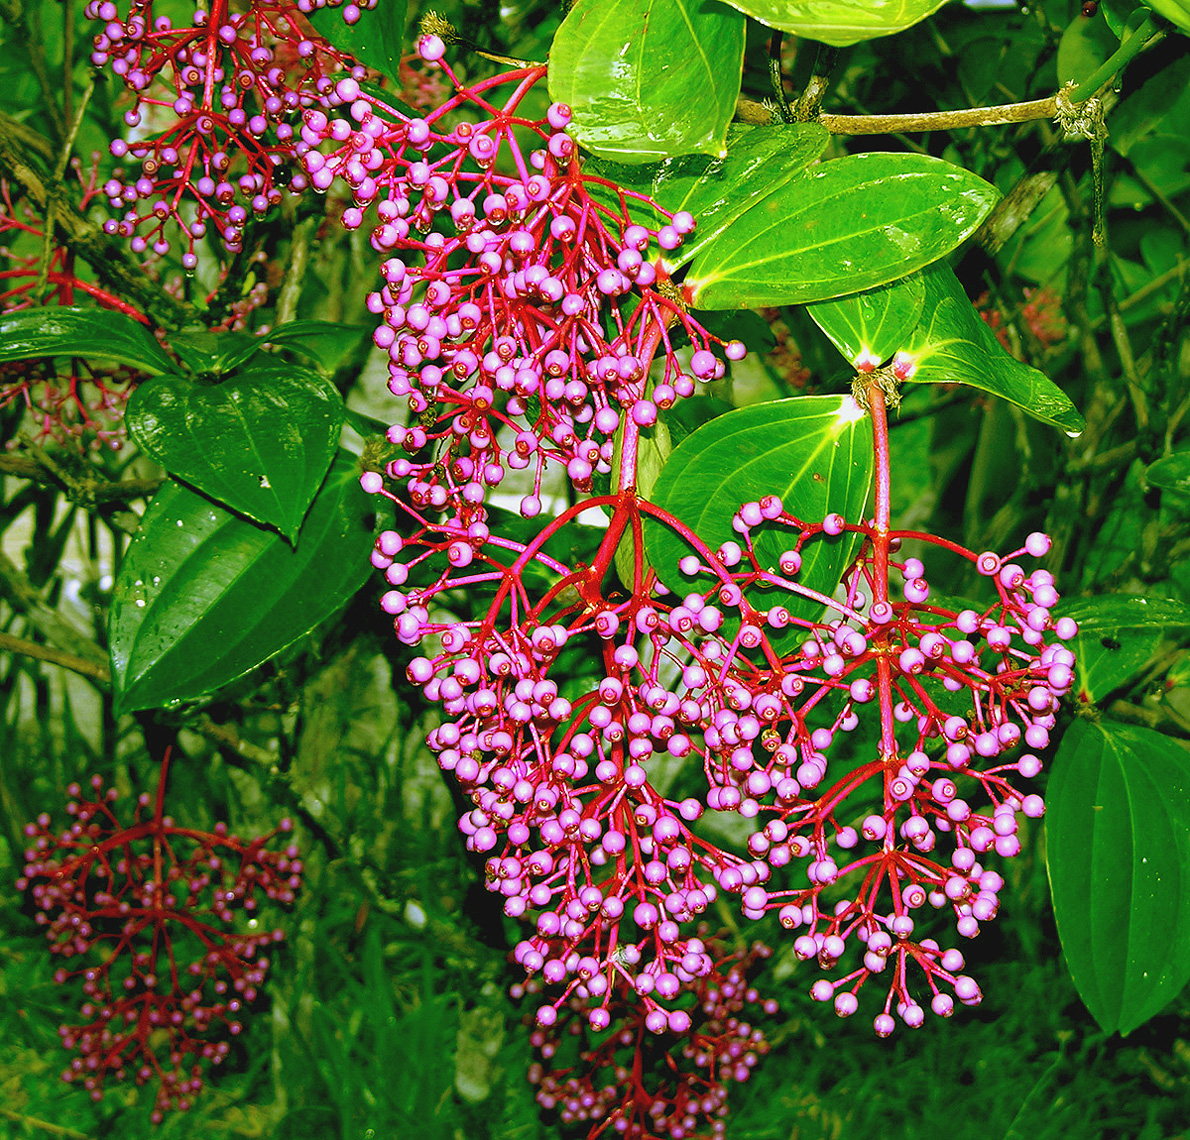 Medinilla speciosa from the
slopes of Mt. Kinabalu